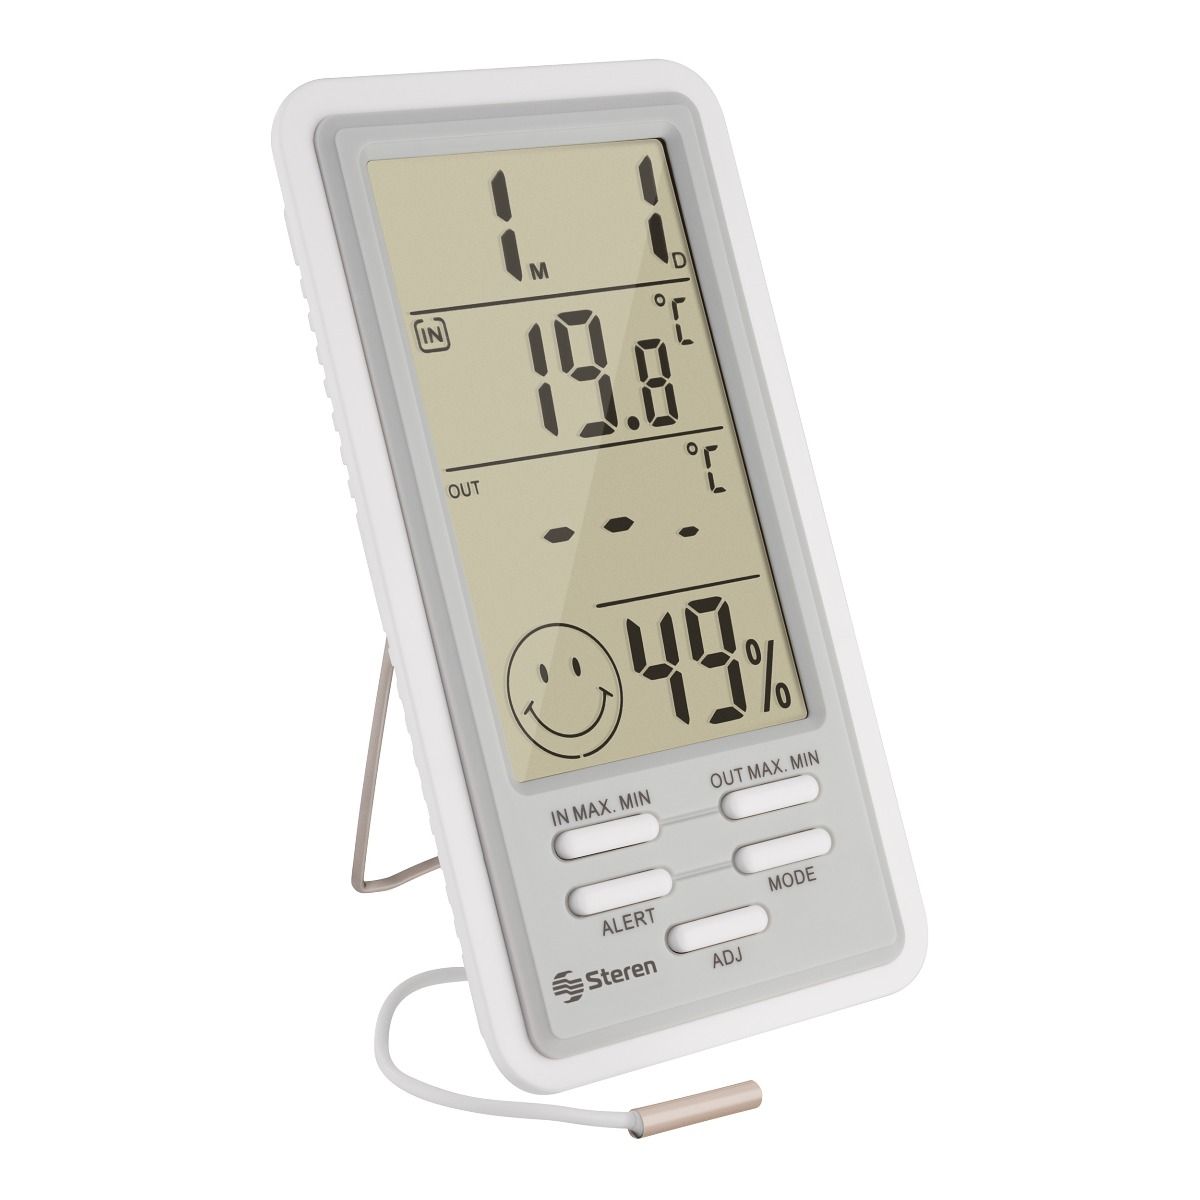 Digital ETP110 Termómetro Higrómetro Termohigrómetro Humedad Temperatura Medidor de Punto de Rocío Medidor para Home Office Laboratorio 